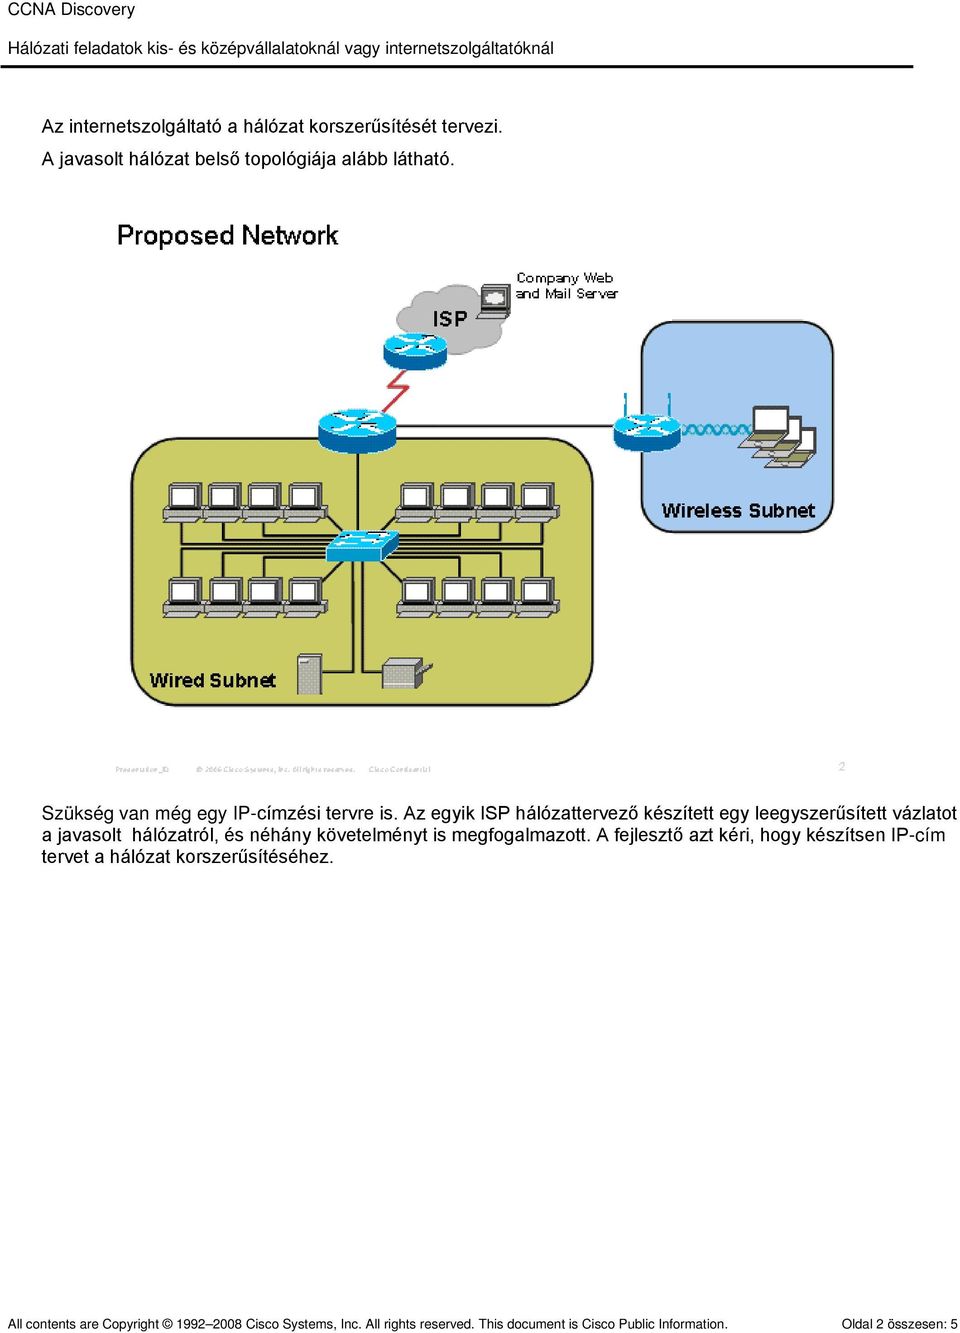 Az egyik ISP hálózattervező készített egy leegyszerűsített vázlatot a javasolt hálózatról, és néhány követelményt is